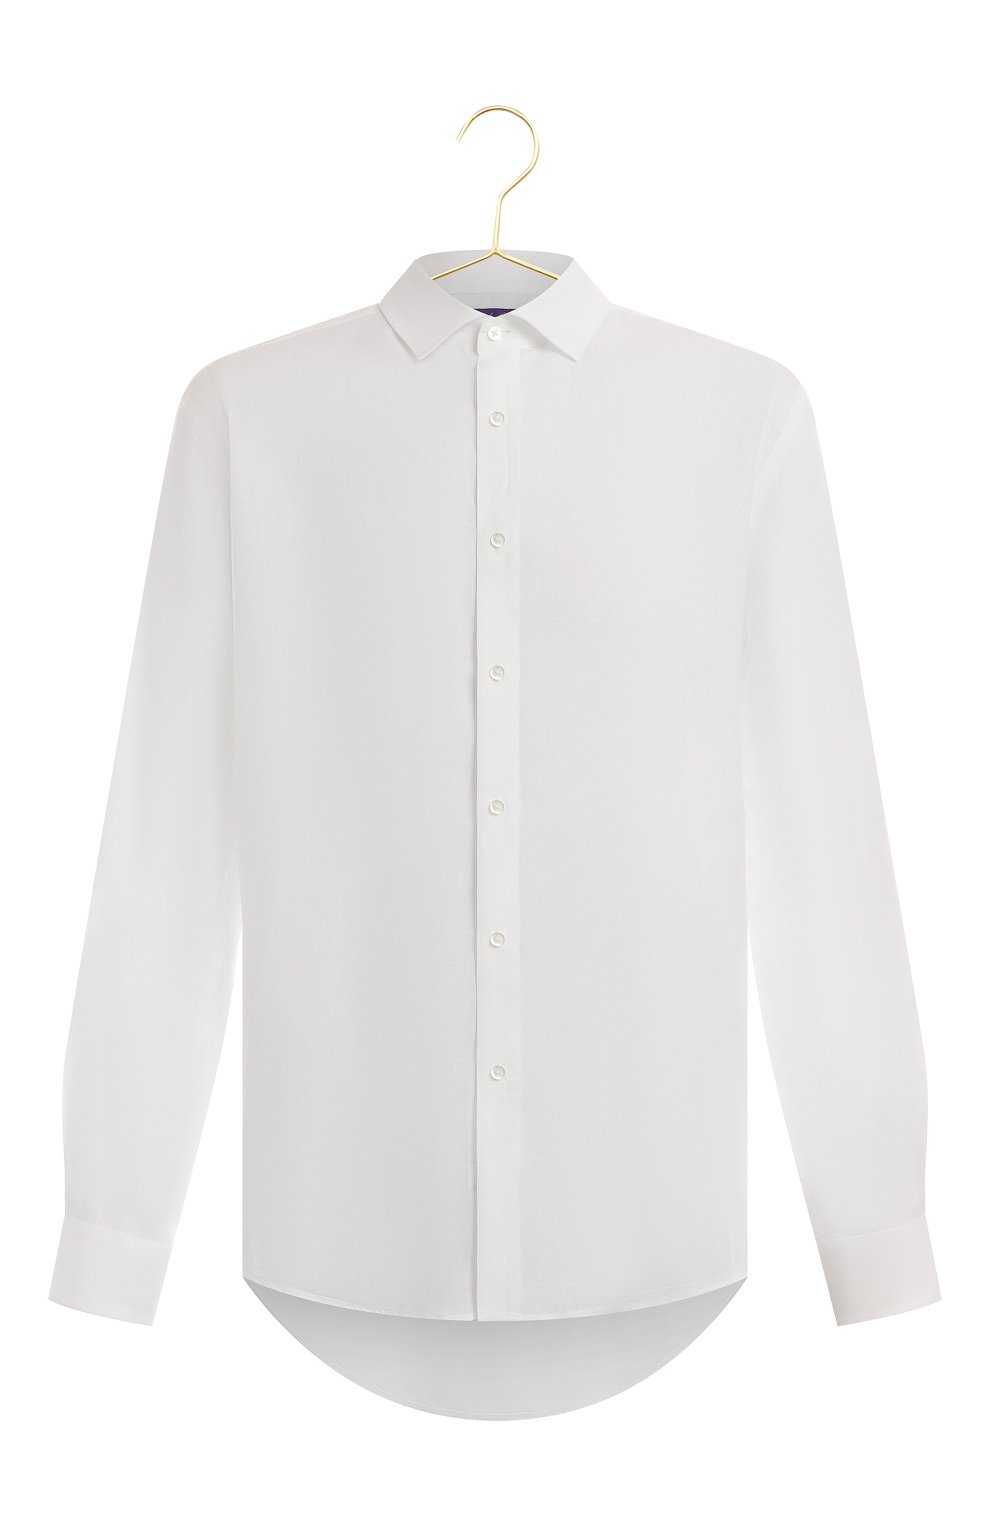 Льняная сорочка | Ralph Lauren | Белый - 1